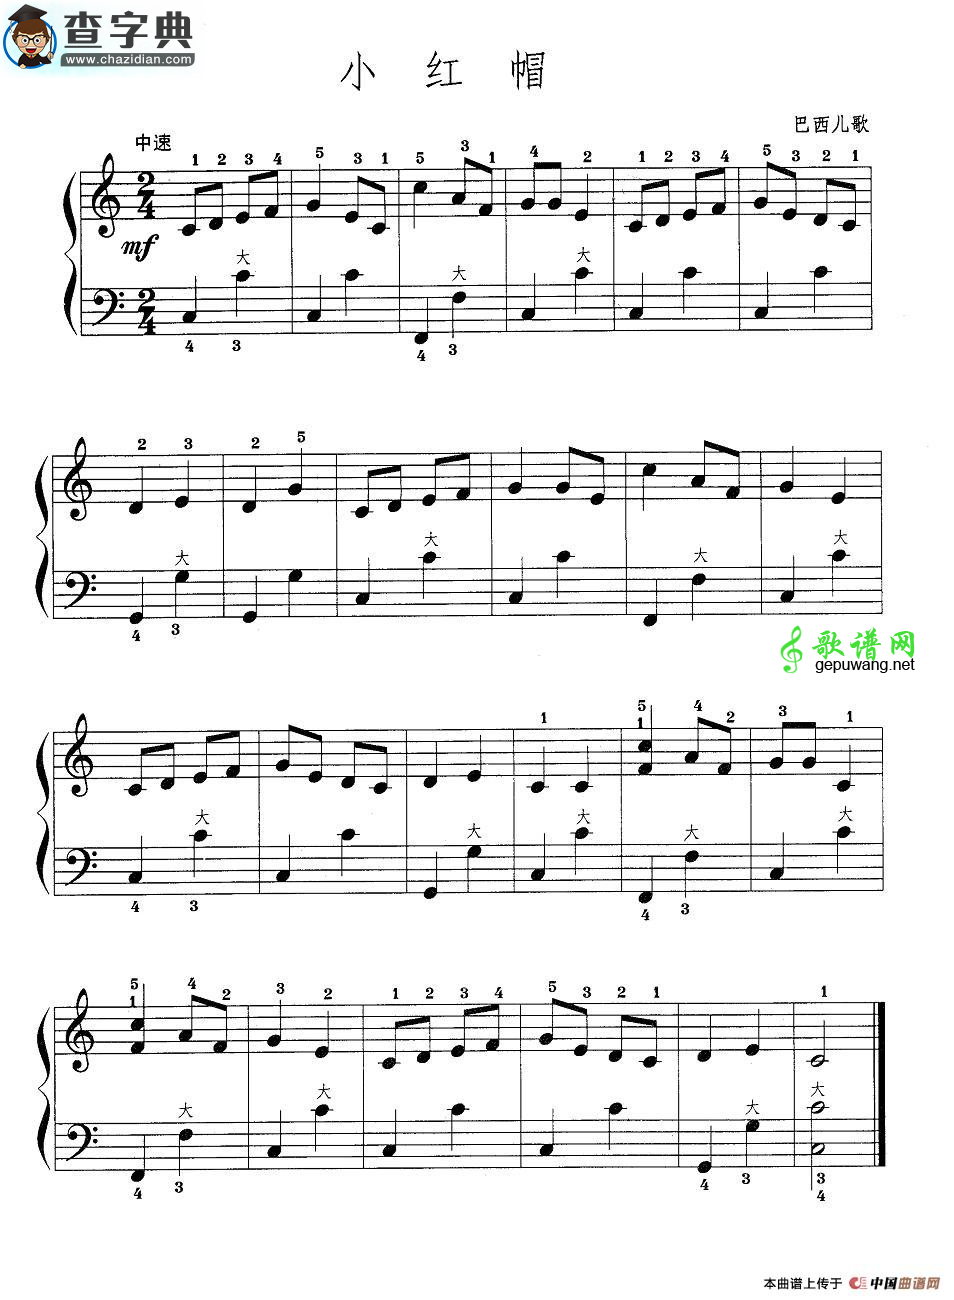 钢琴曲谱和手风琴曲谱有什么区别_管风琴和手风琴区别